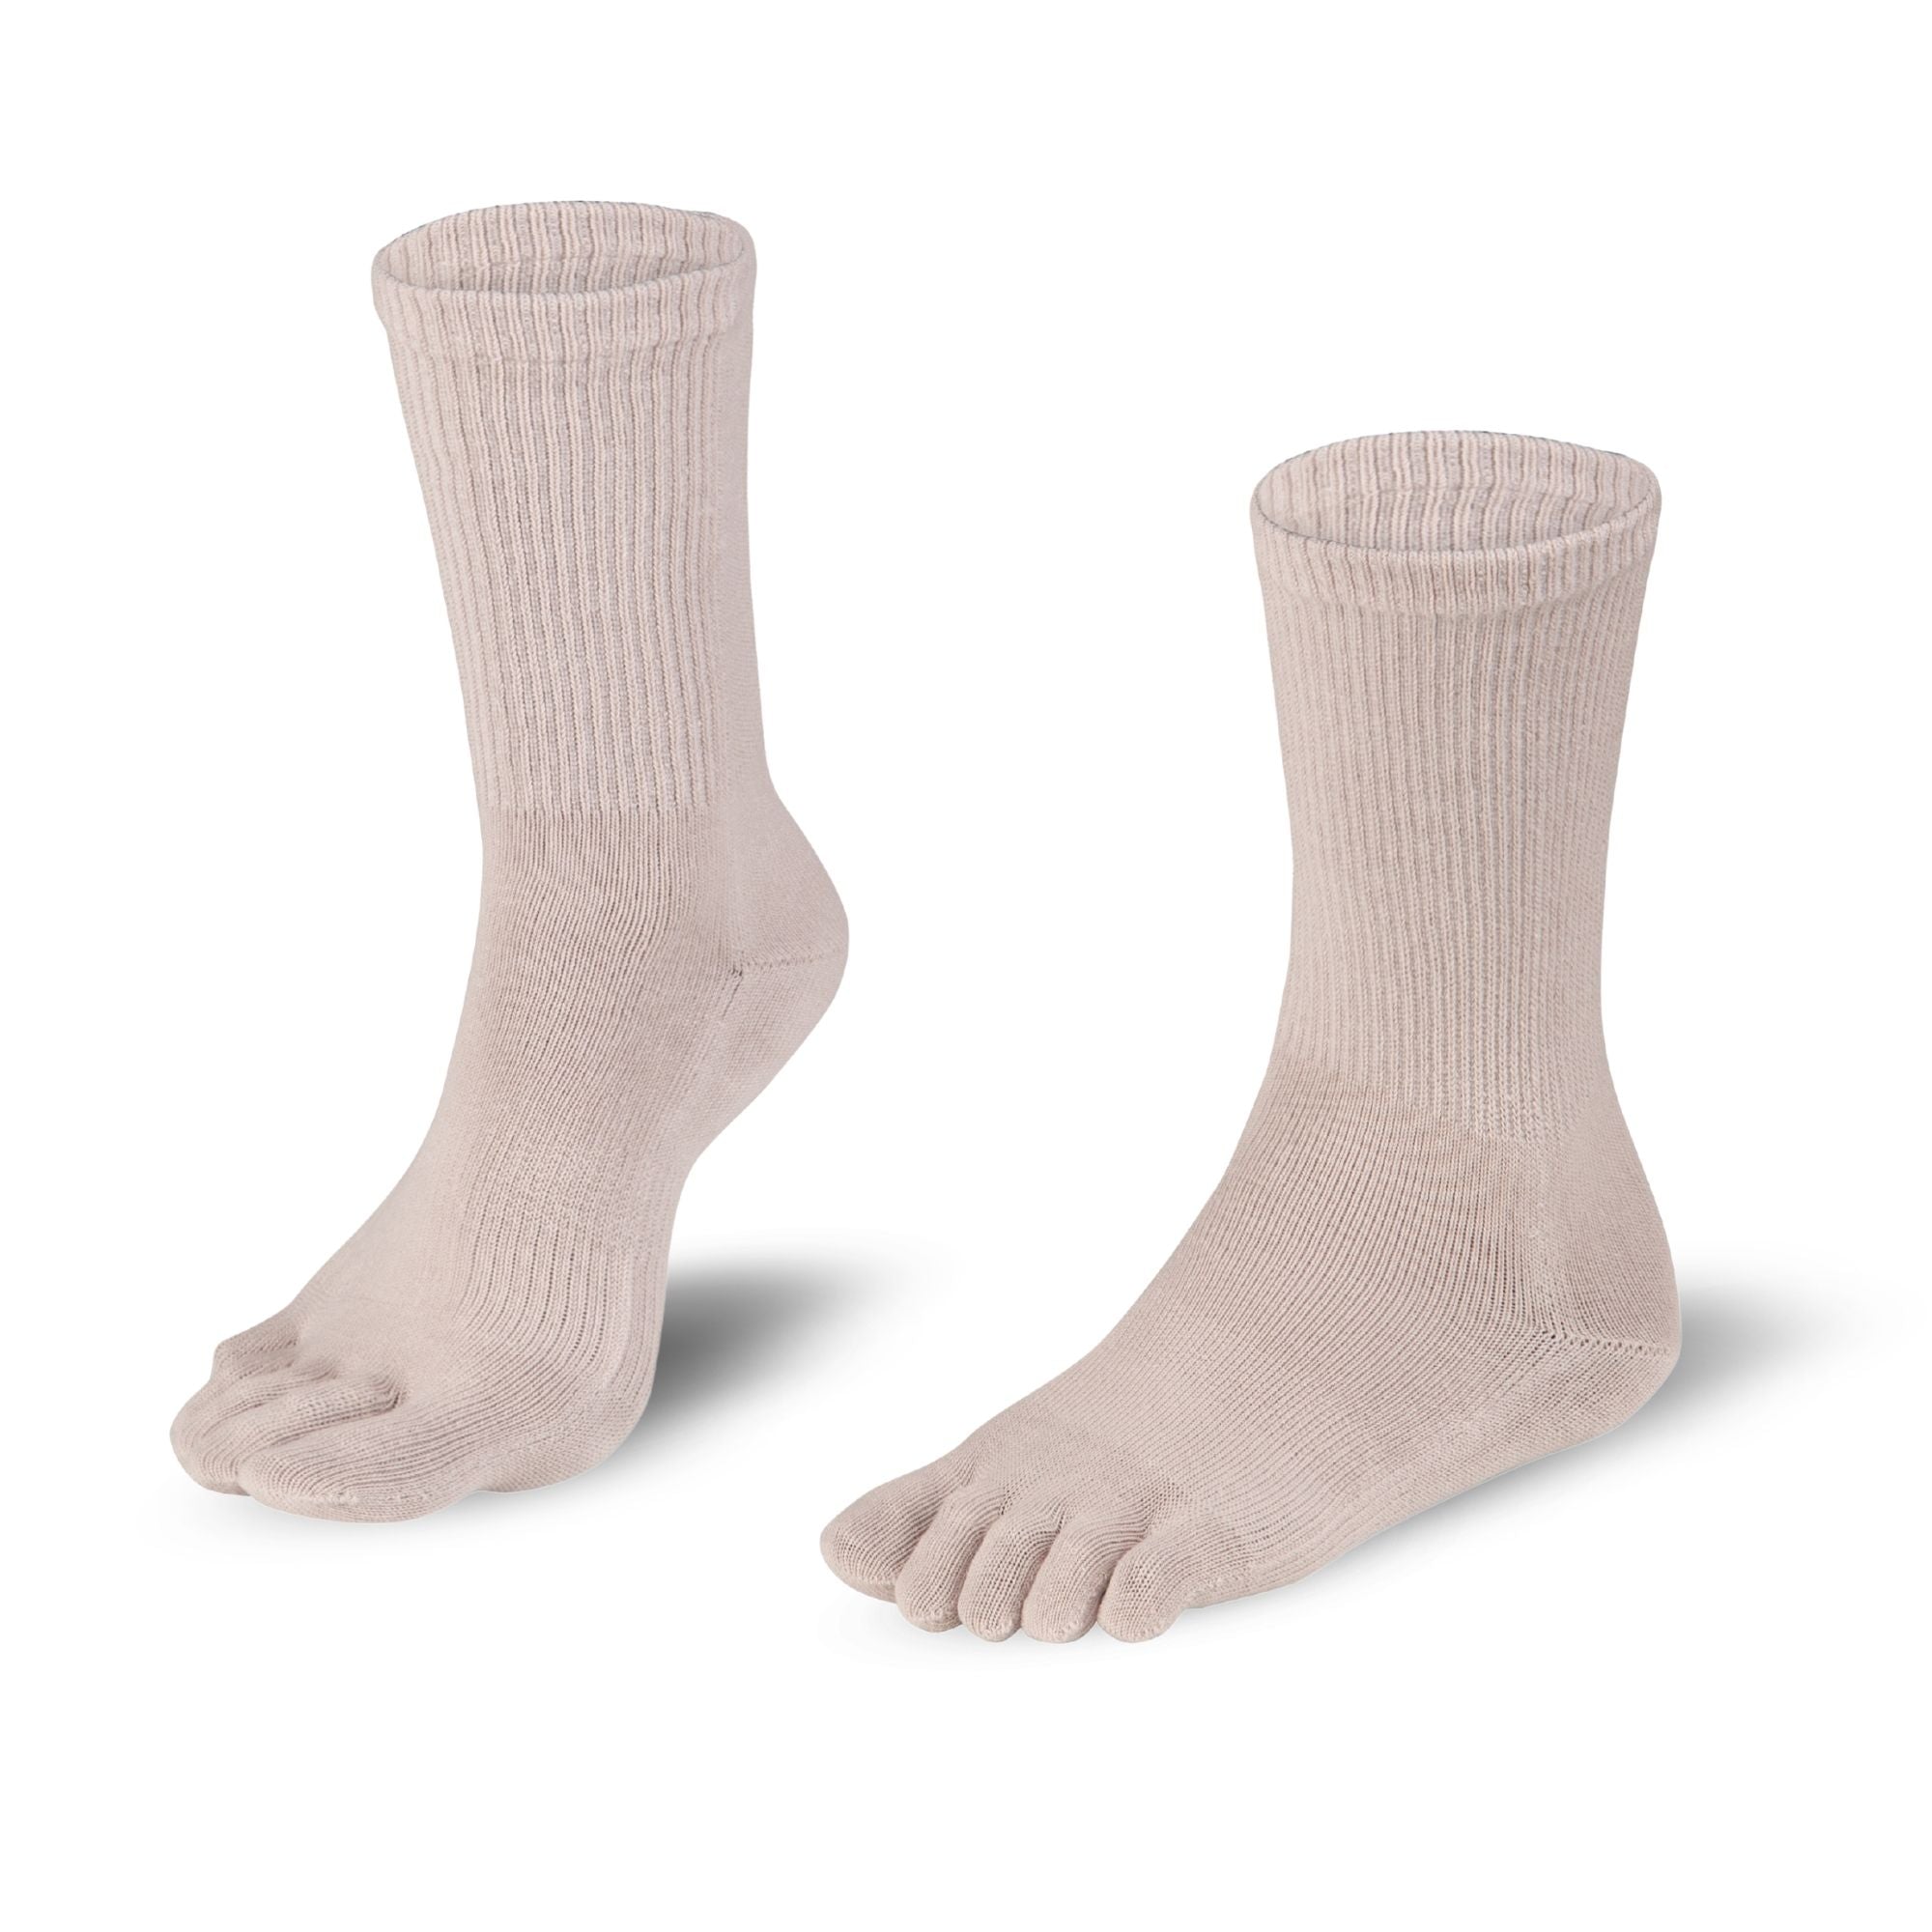 Dr. Foot Hallux Valgus chaussettes à orteils de Knitido en gris clair